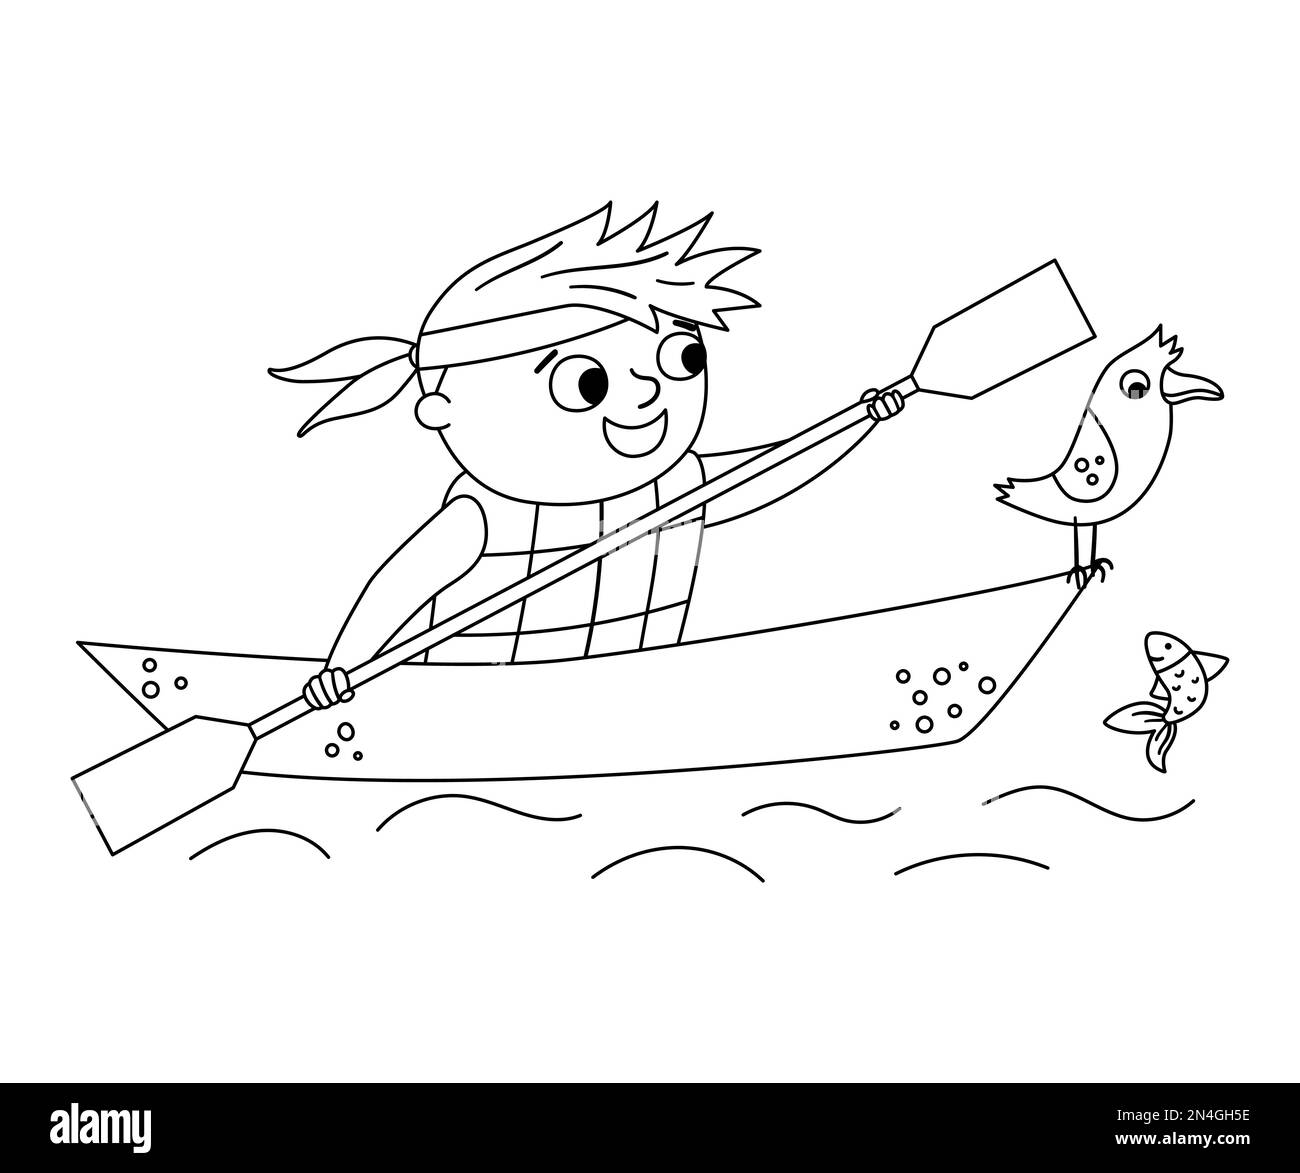 Vecteur noir et blanc kayak garçon. Scène de rafting en ligne de feu de camp avec un enfant mignon dans un bateau avec paddle et mouette. Activités aquatiques en extérieur ou caméra d'été Illustration de Vecteur